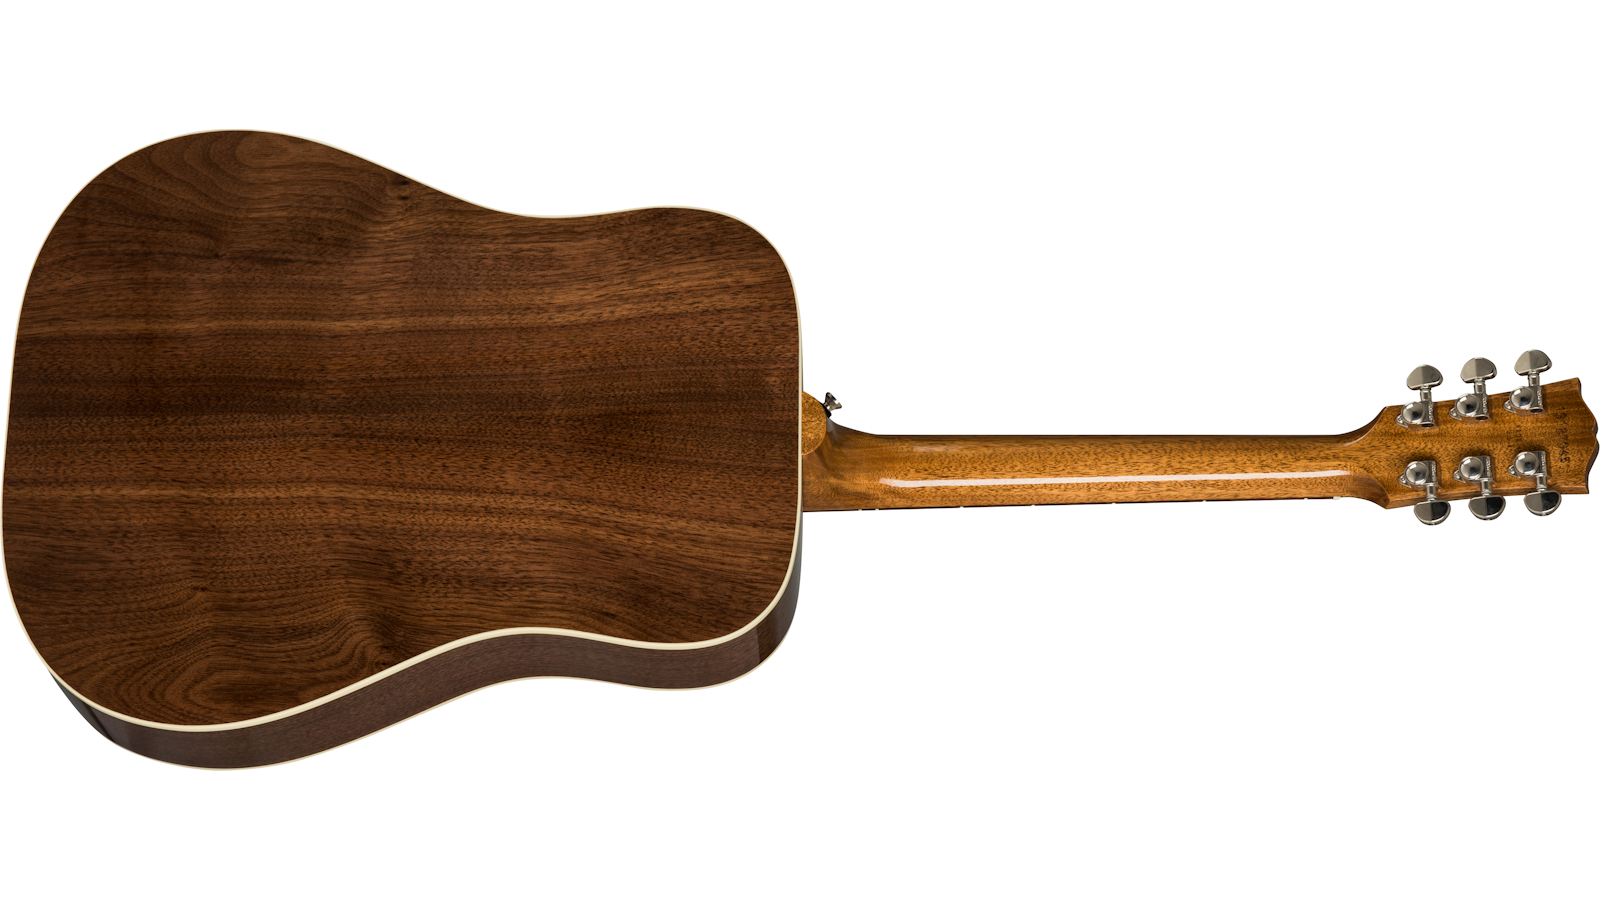 Gibson Hummingbird Studio 2019 Dreadnought Epicea Noyer Noy - Natural - Acoustic guitar & electro - Variation 1